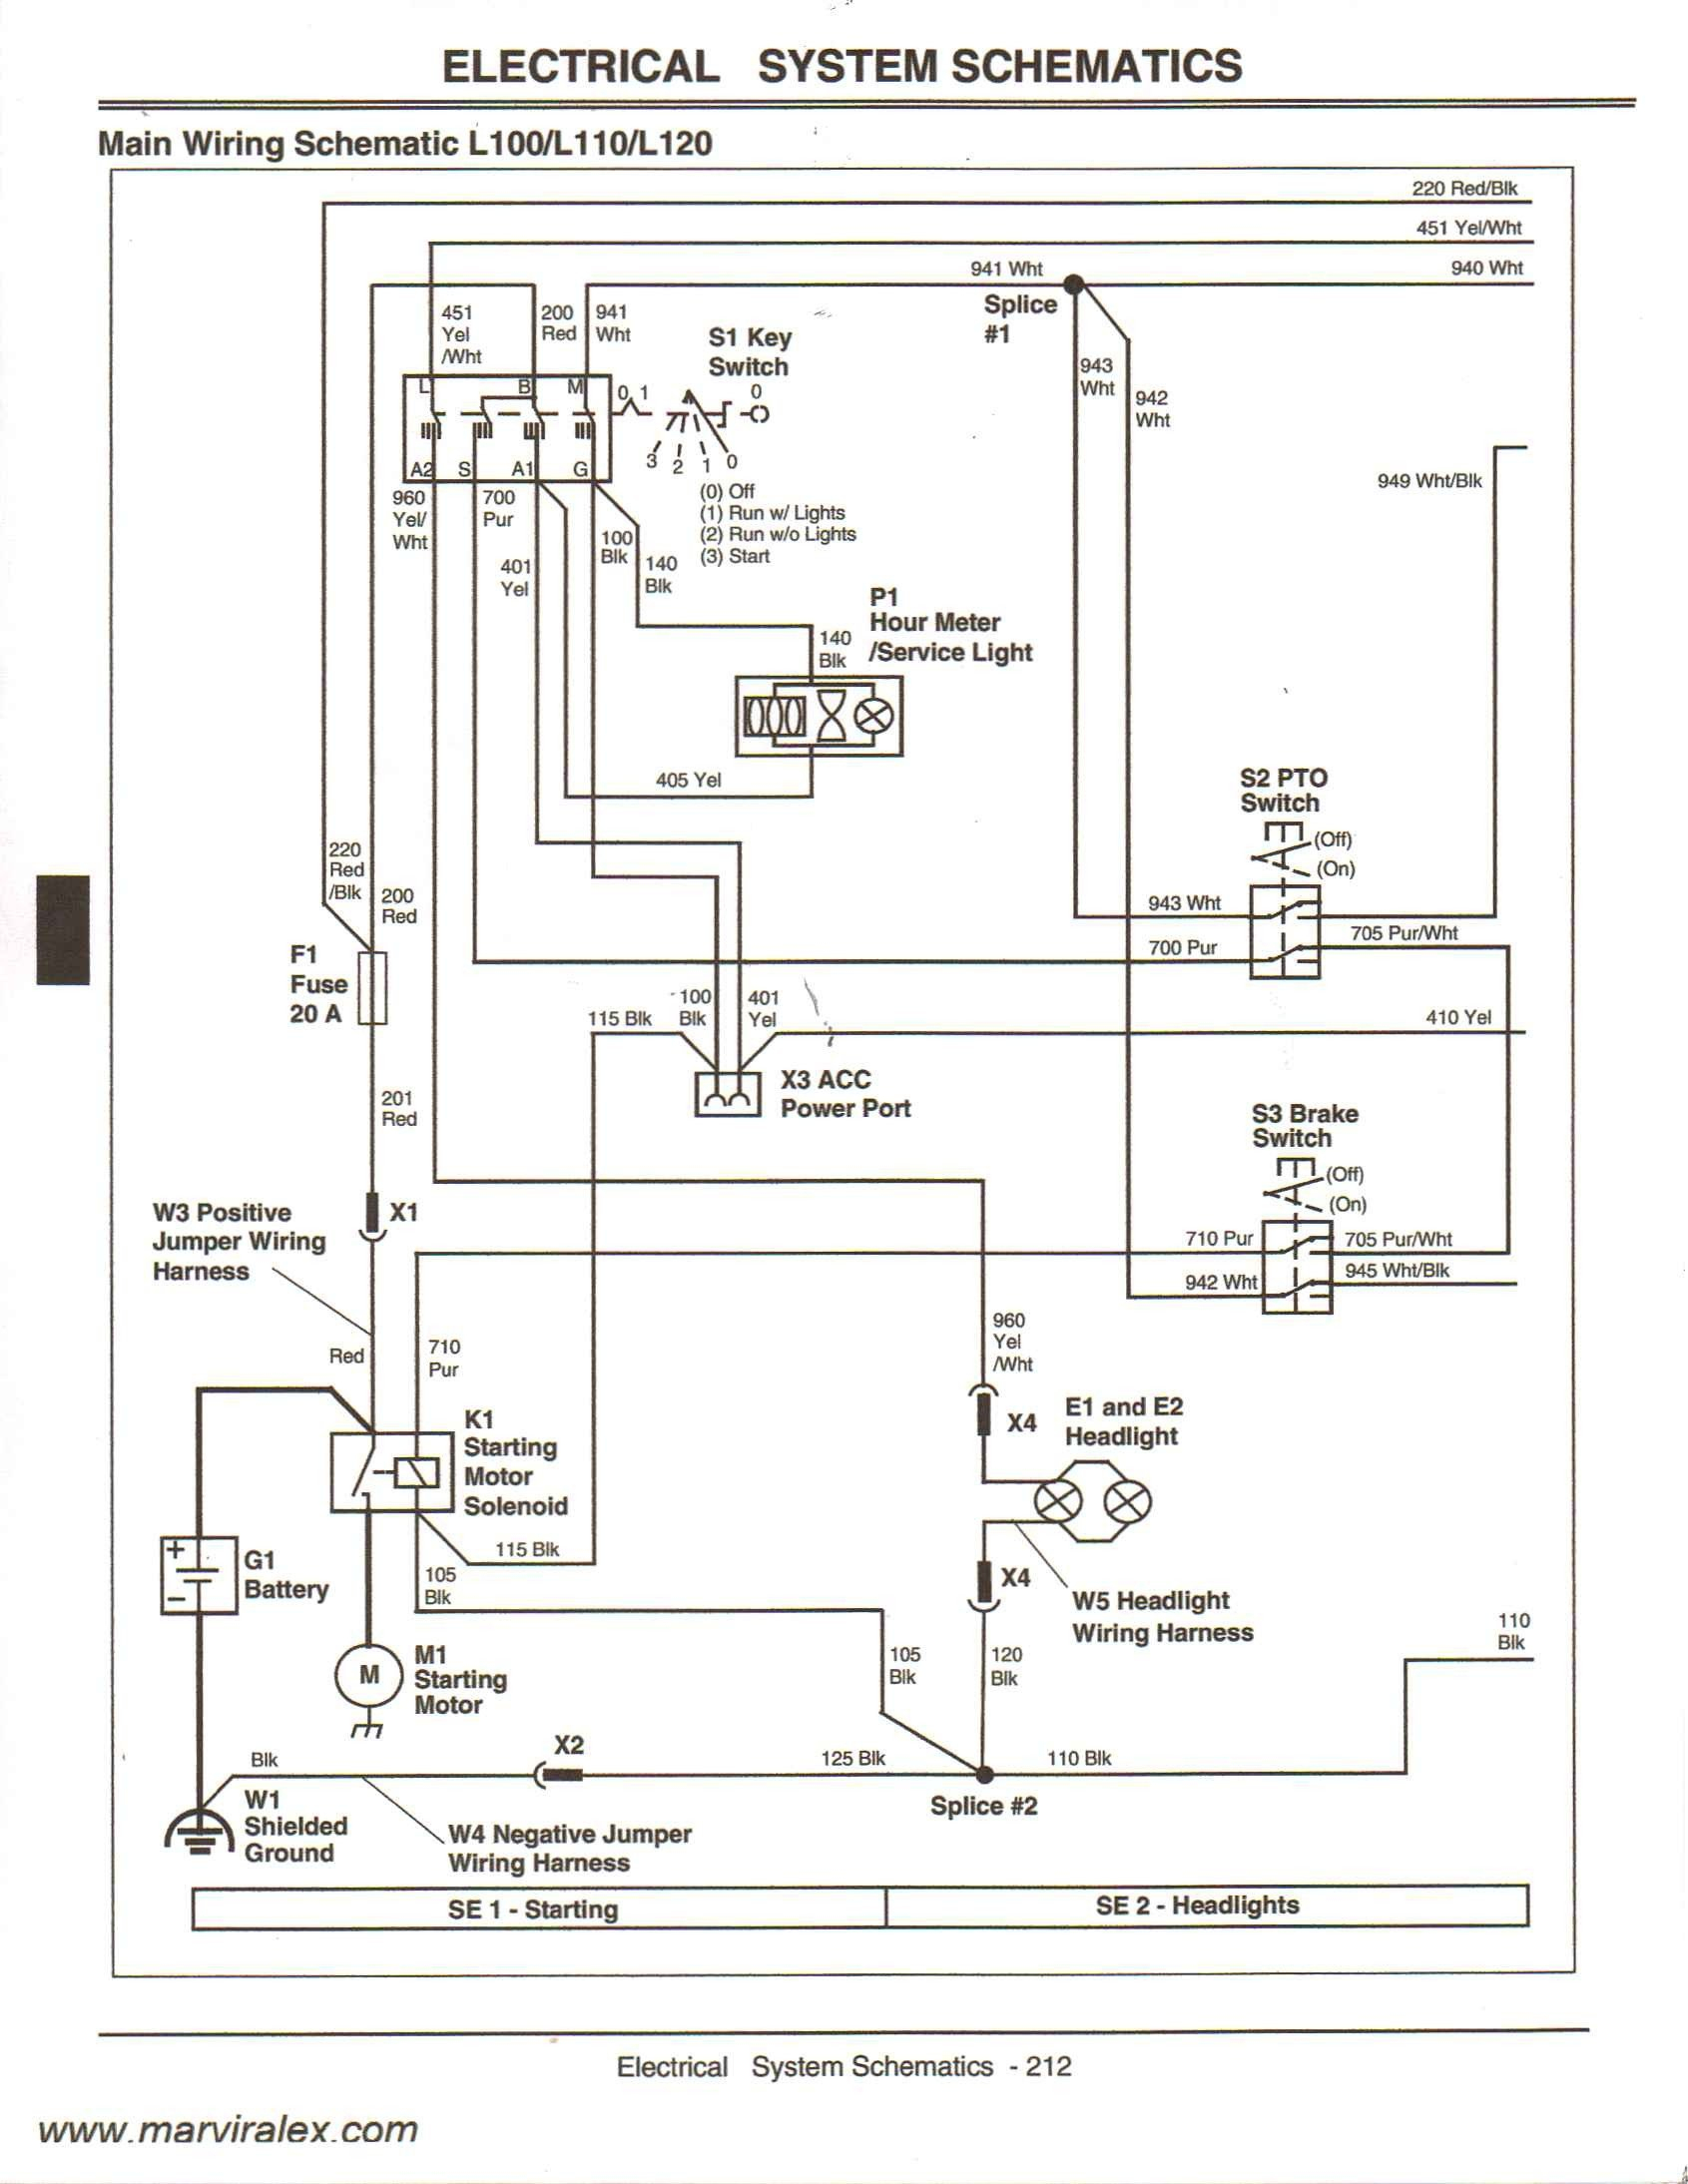 1945 John Deere Wiring Diagram - Trusted Wiring Diagrams • - John Deere Ignition Switch Wiring Diagram